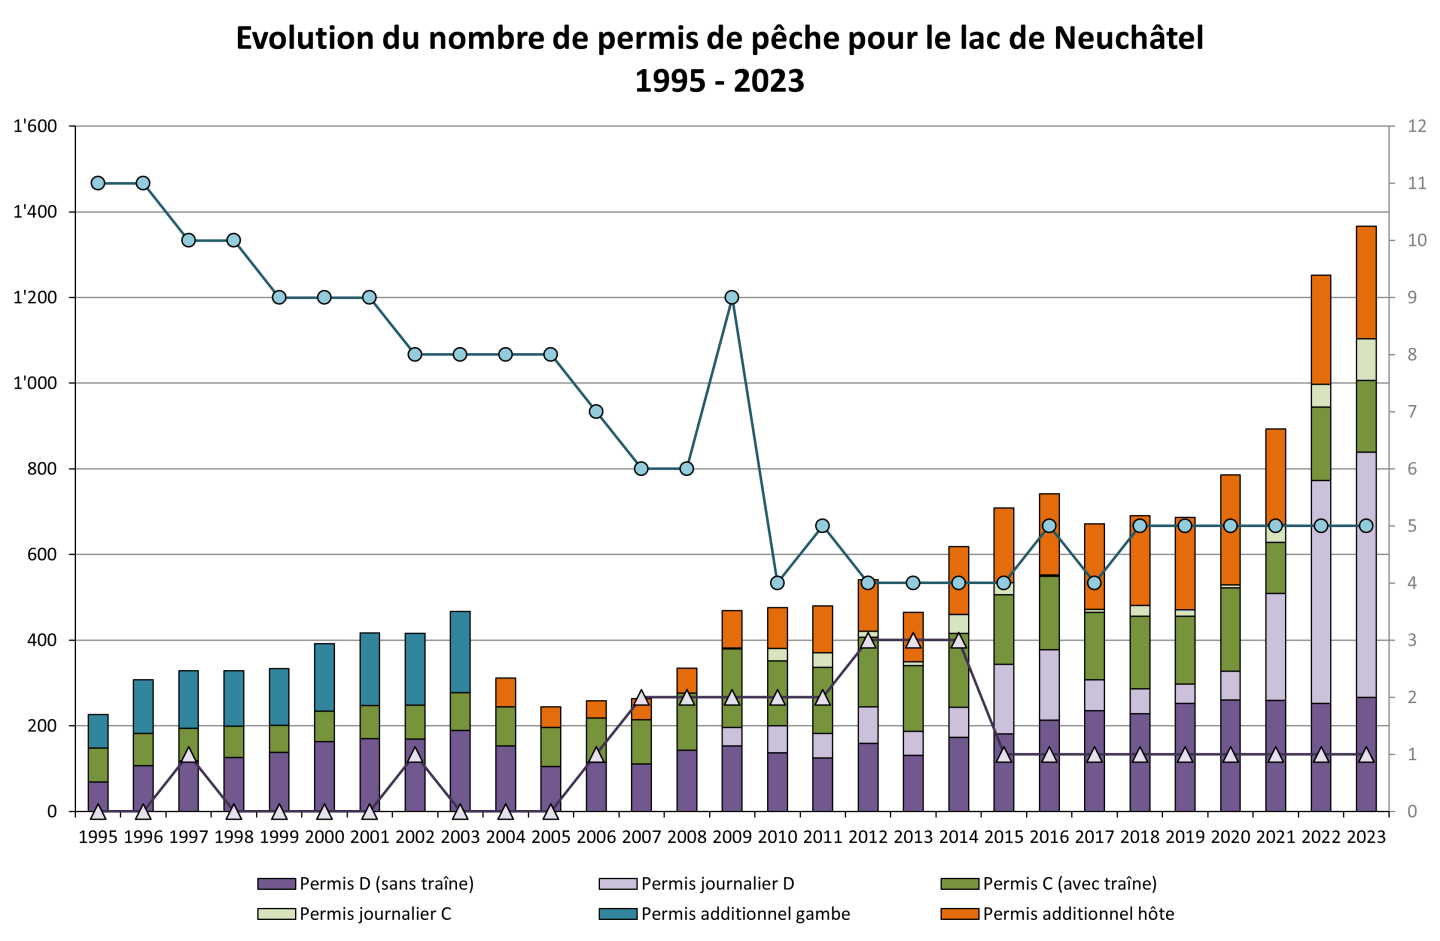 Evolution du nombre de permis de pêche pour le lac de Neuchâtel 1995 - 2023